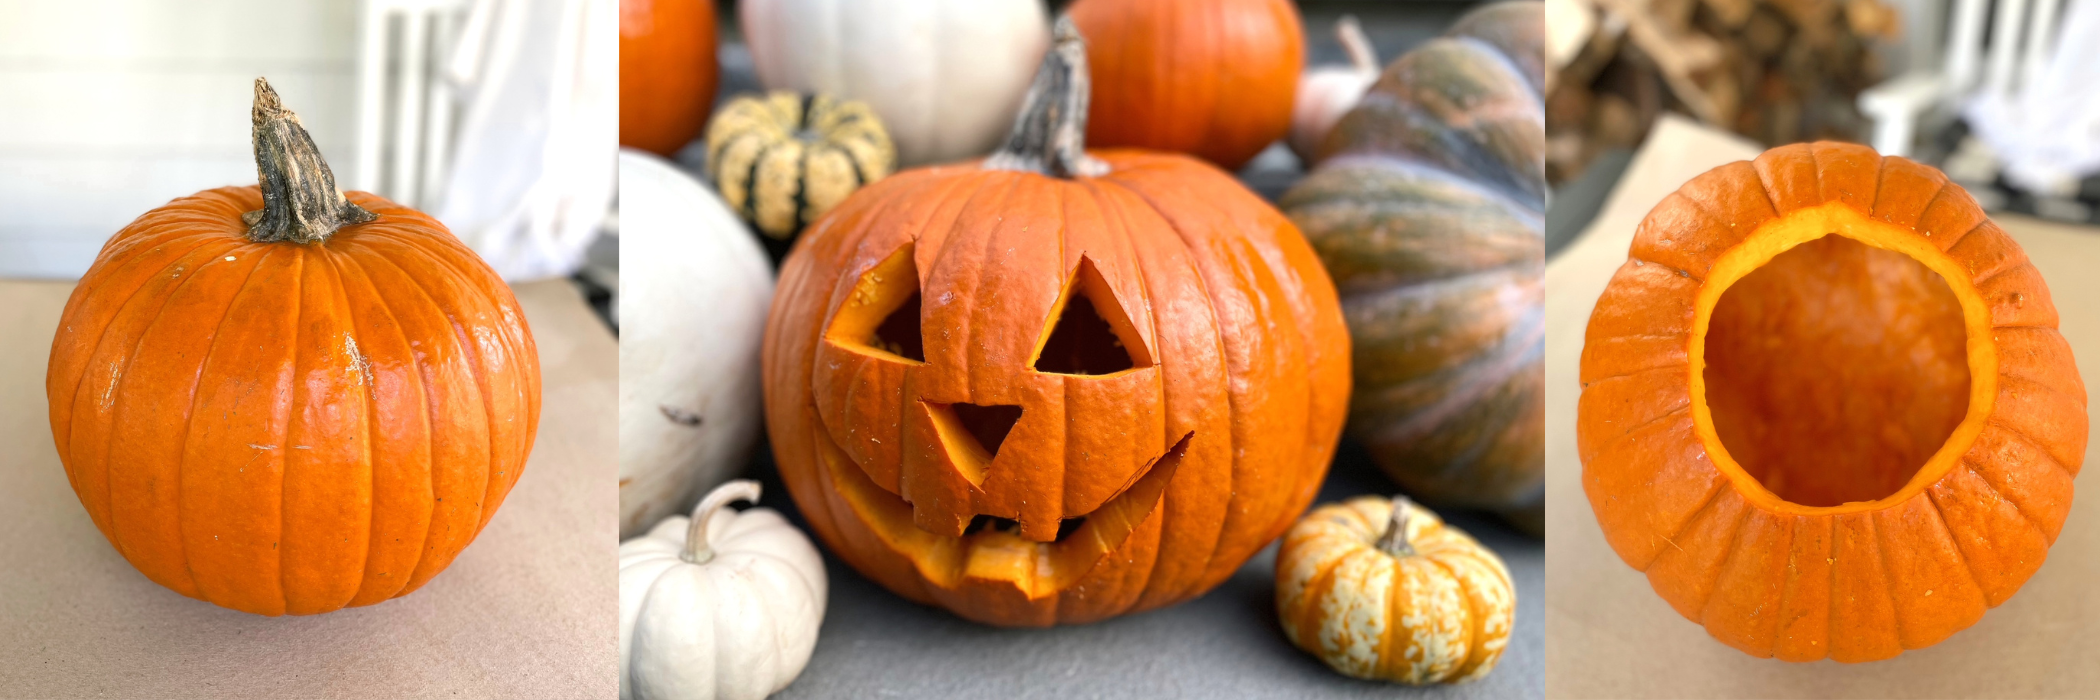 How do I prepare a pumpkin for carving